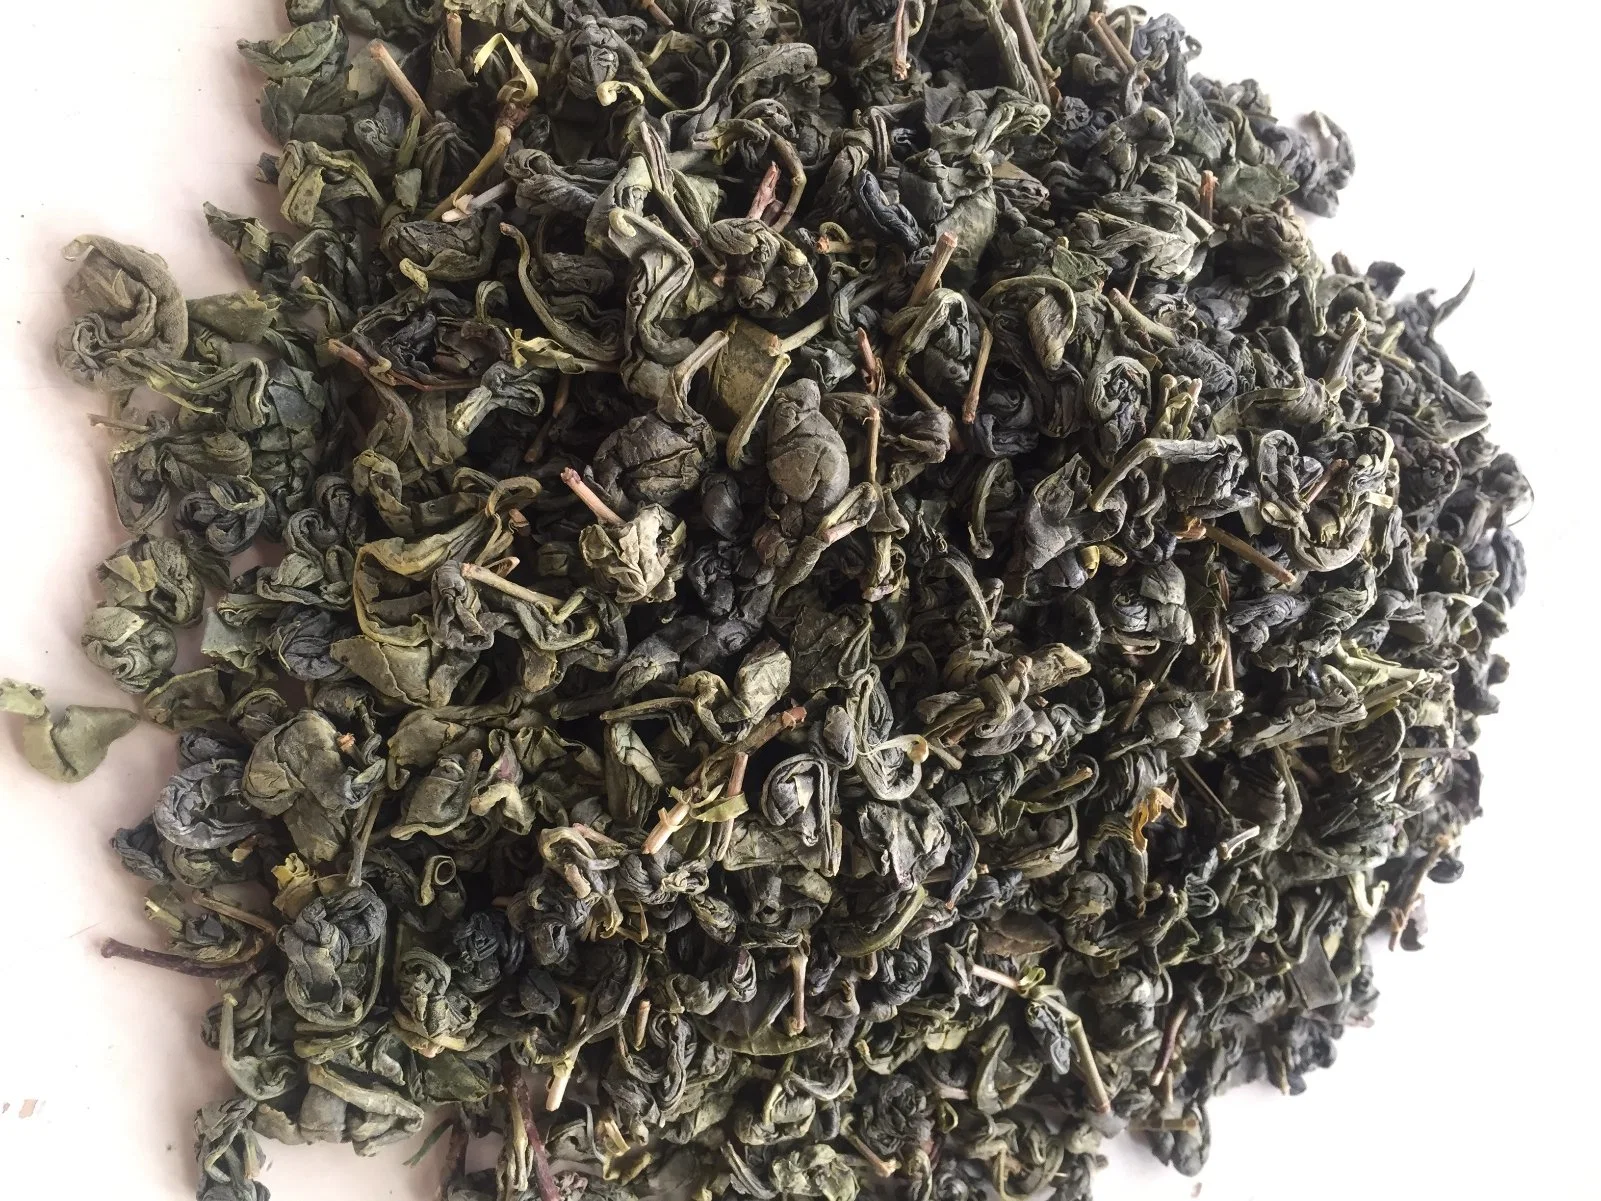 China Green Tea for Uzbekistan, Kazakhstan Gunpowder 9501, 3505, 9374